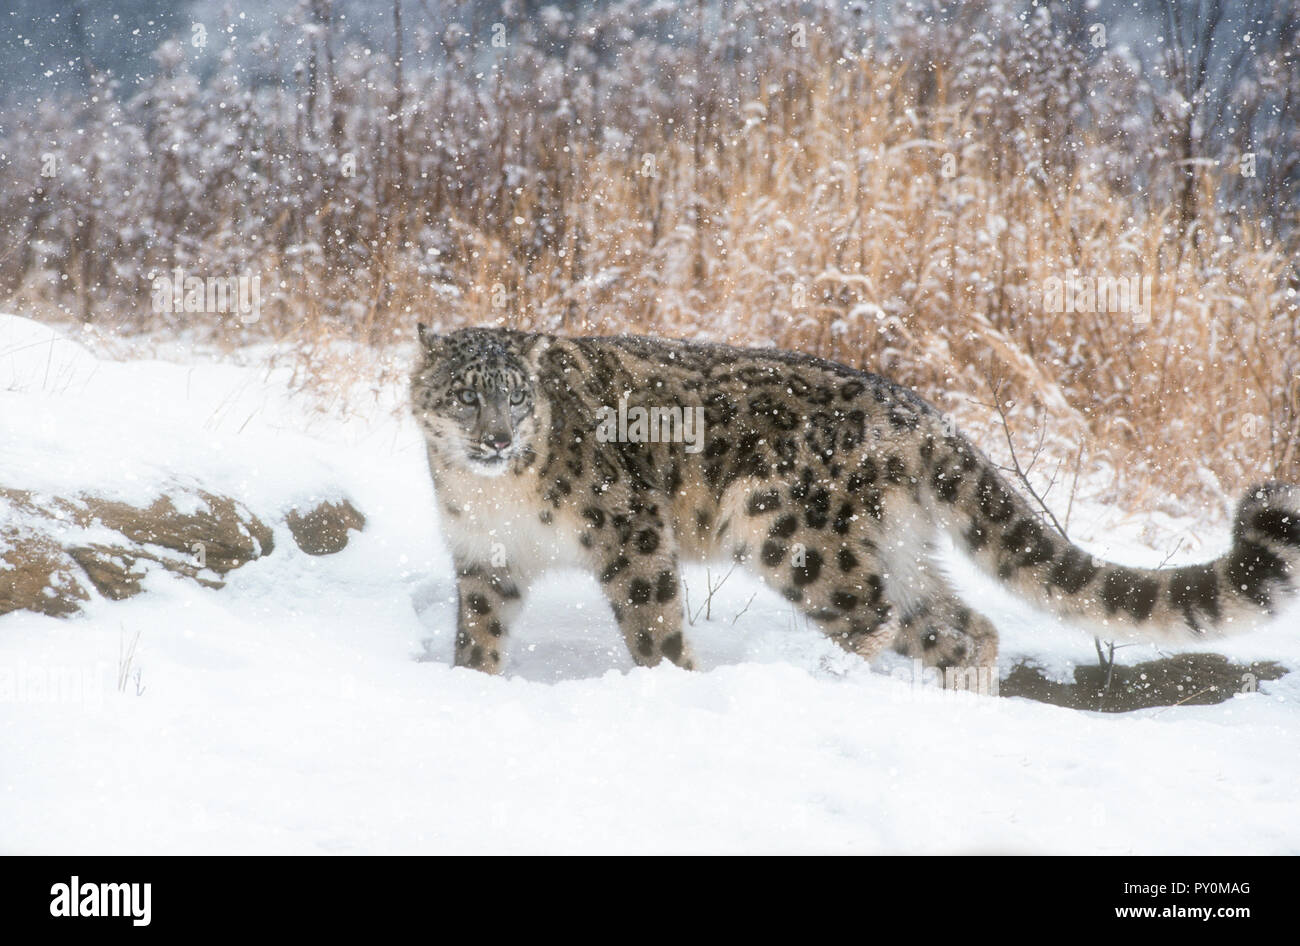 Snow Leopard; Big Cat; Predator; Winter; gefangen. Stockfoto